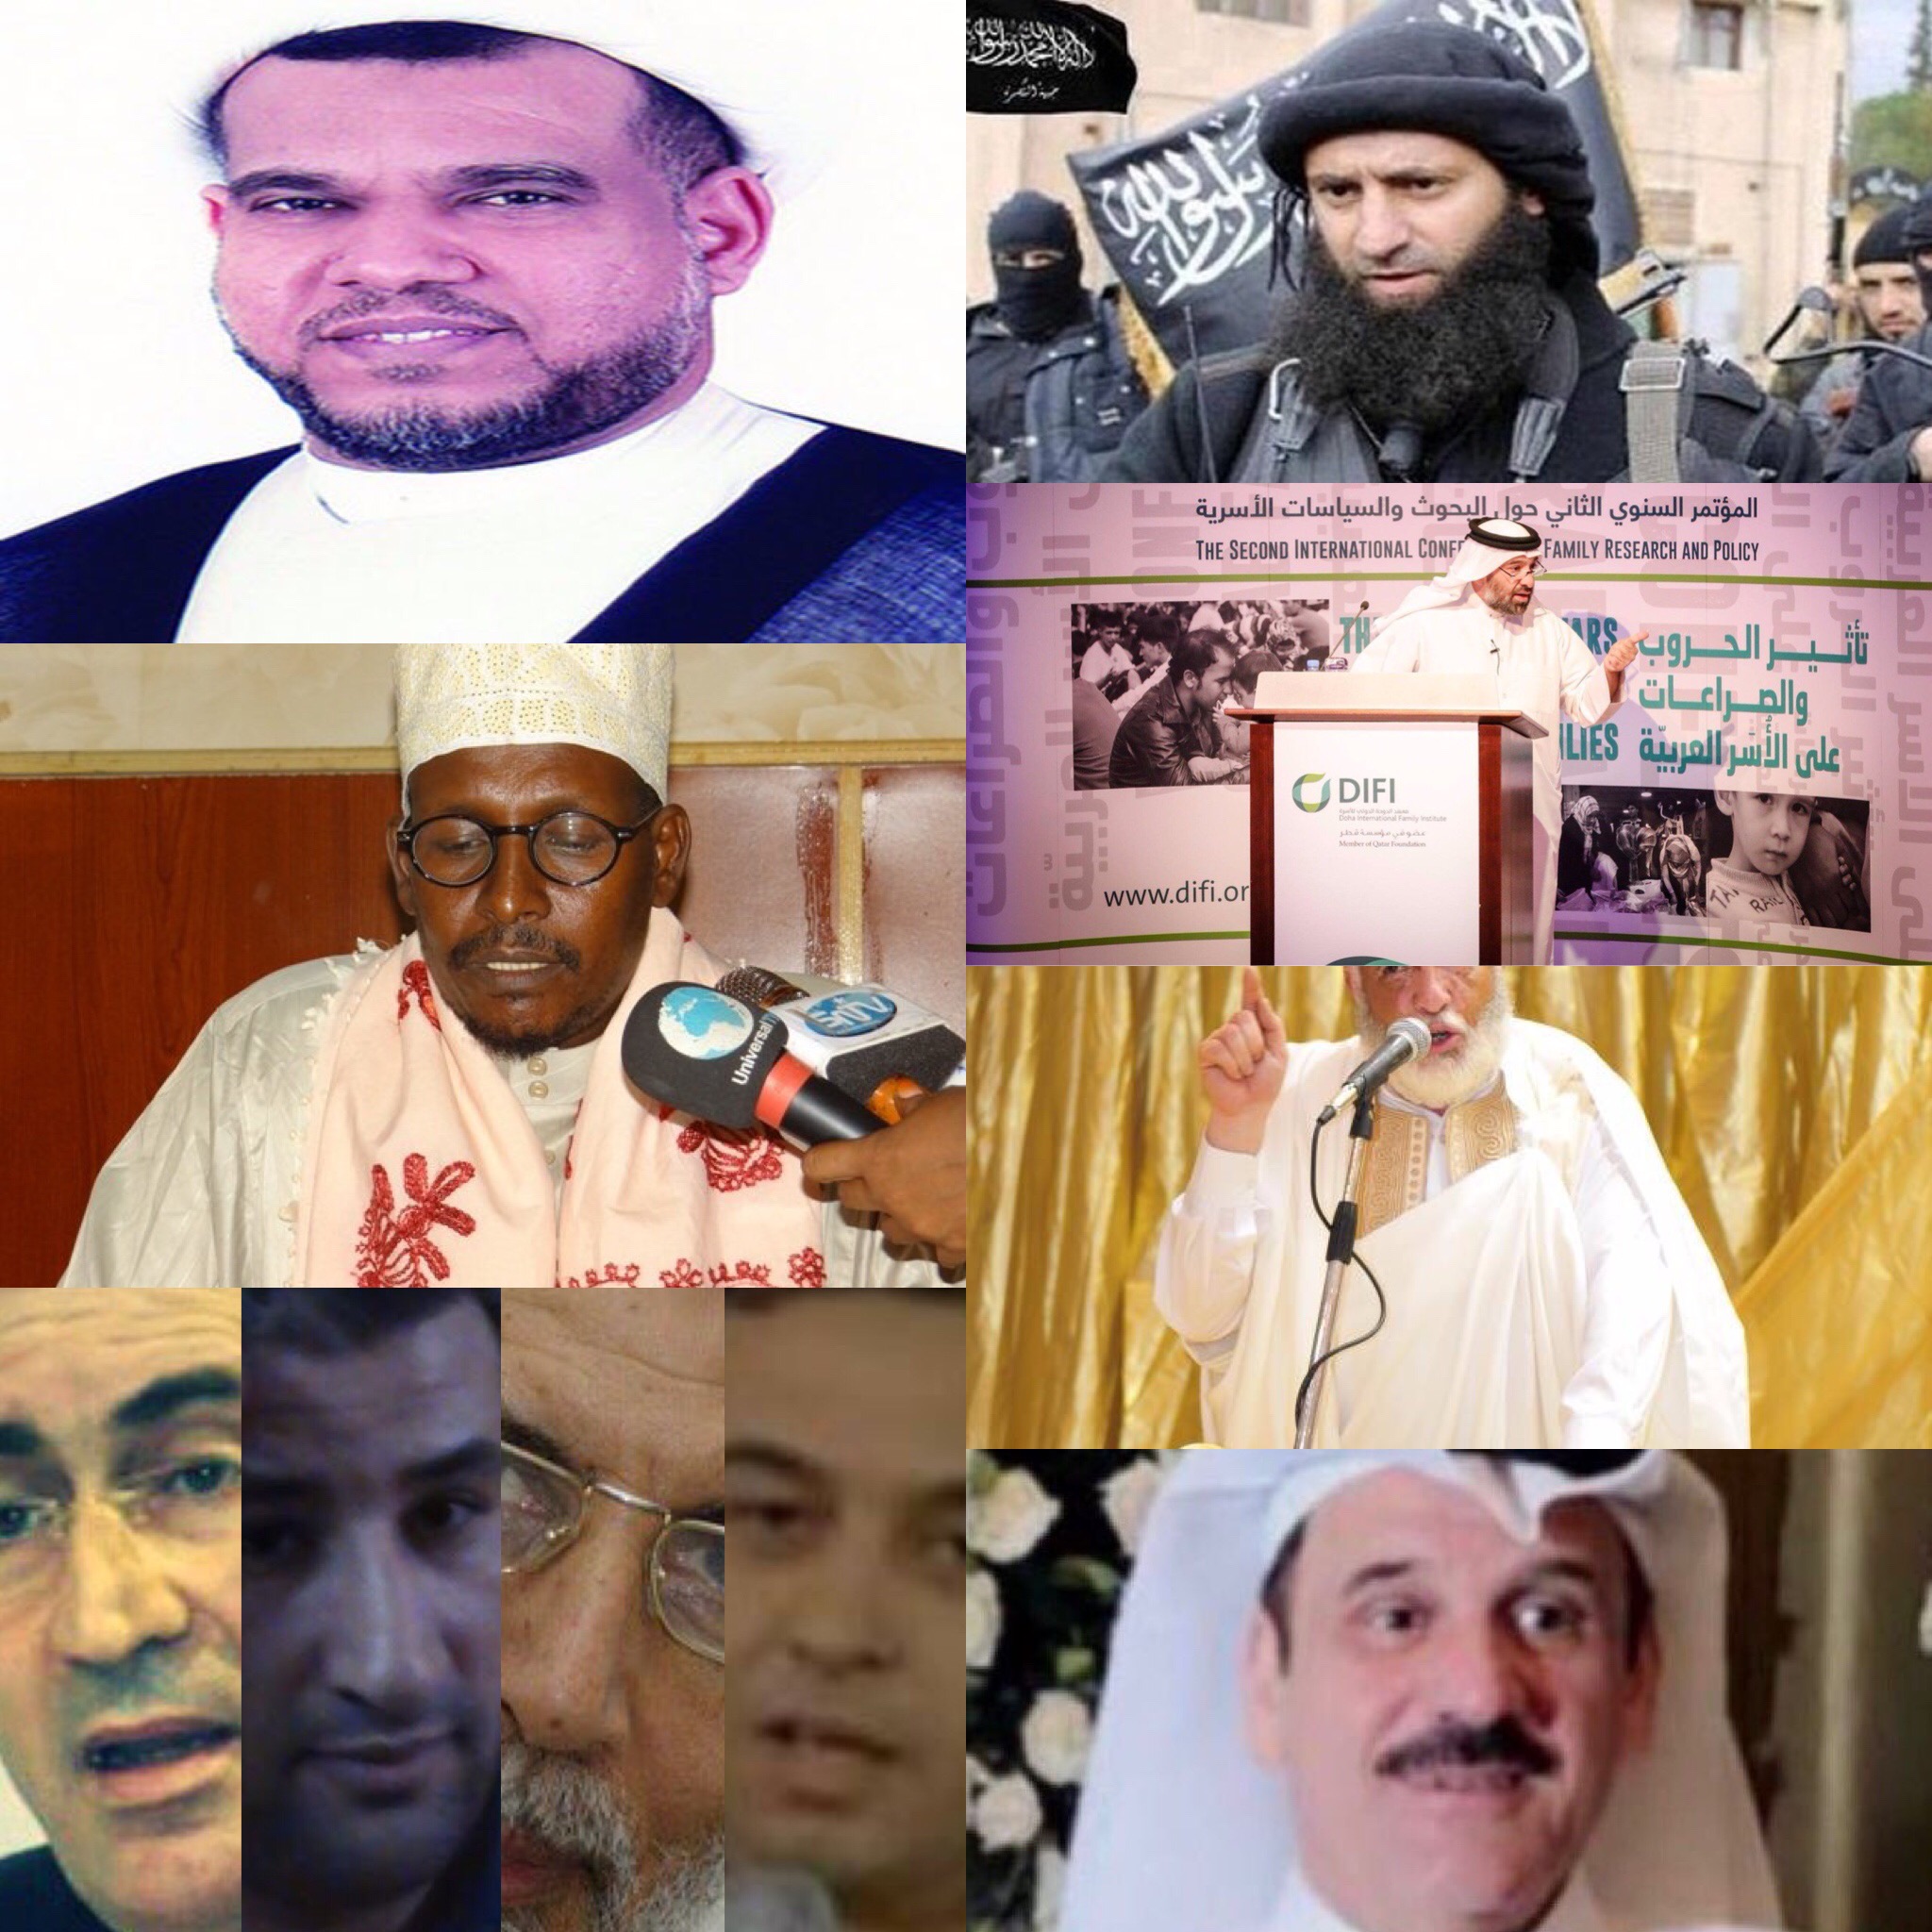 سعيًا لإنقاذ الإنسانيّة وترسيخًا لوسطية الإسلام وتسامحه.. قائمة الإرهاب الثالثة تبتر المزيد من أذرع قطر